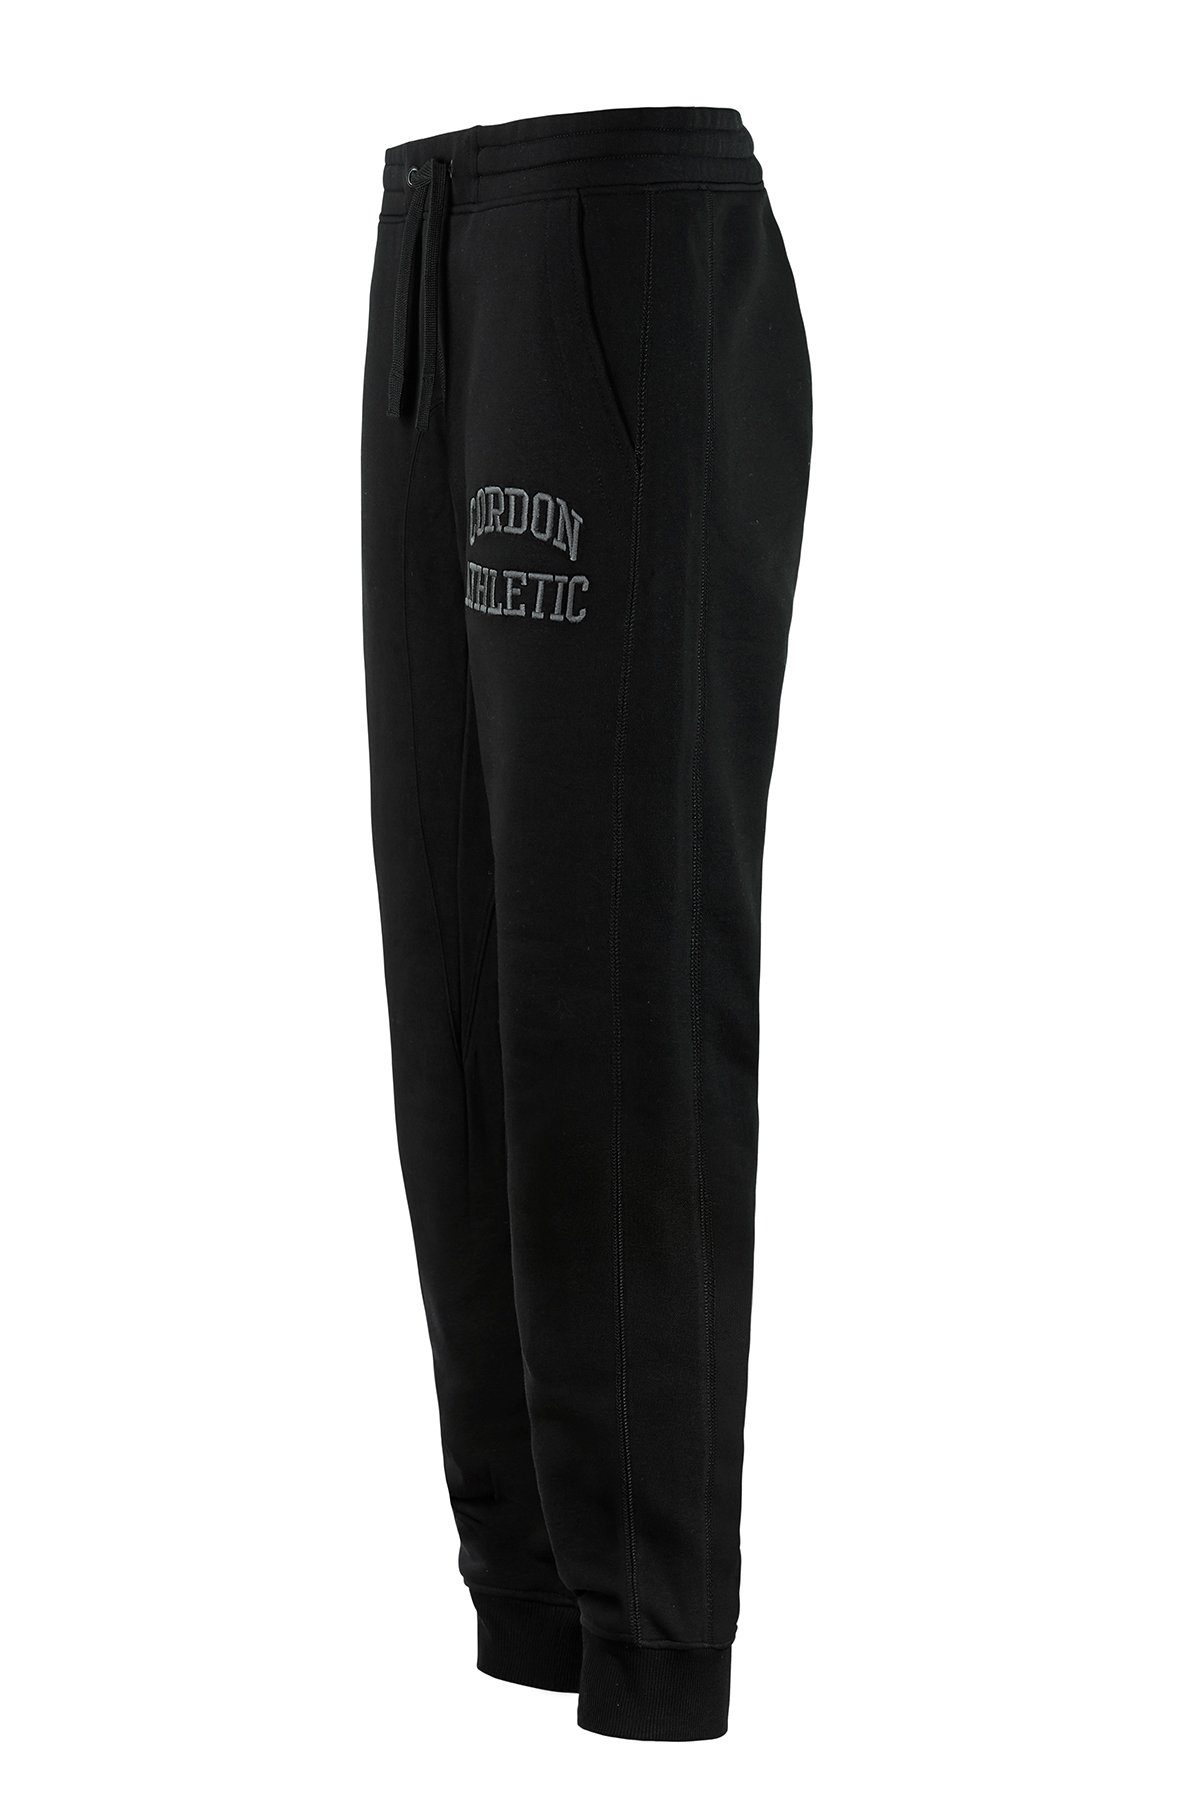 Cordon black 12 010 Sweatpants Max Sport (1-tlg)